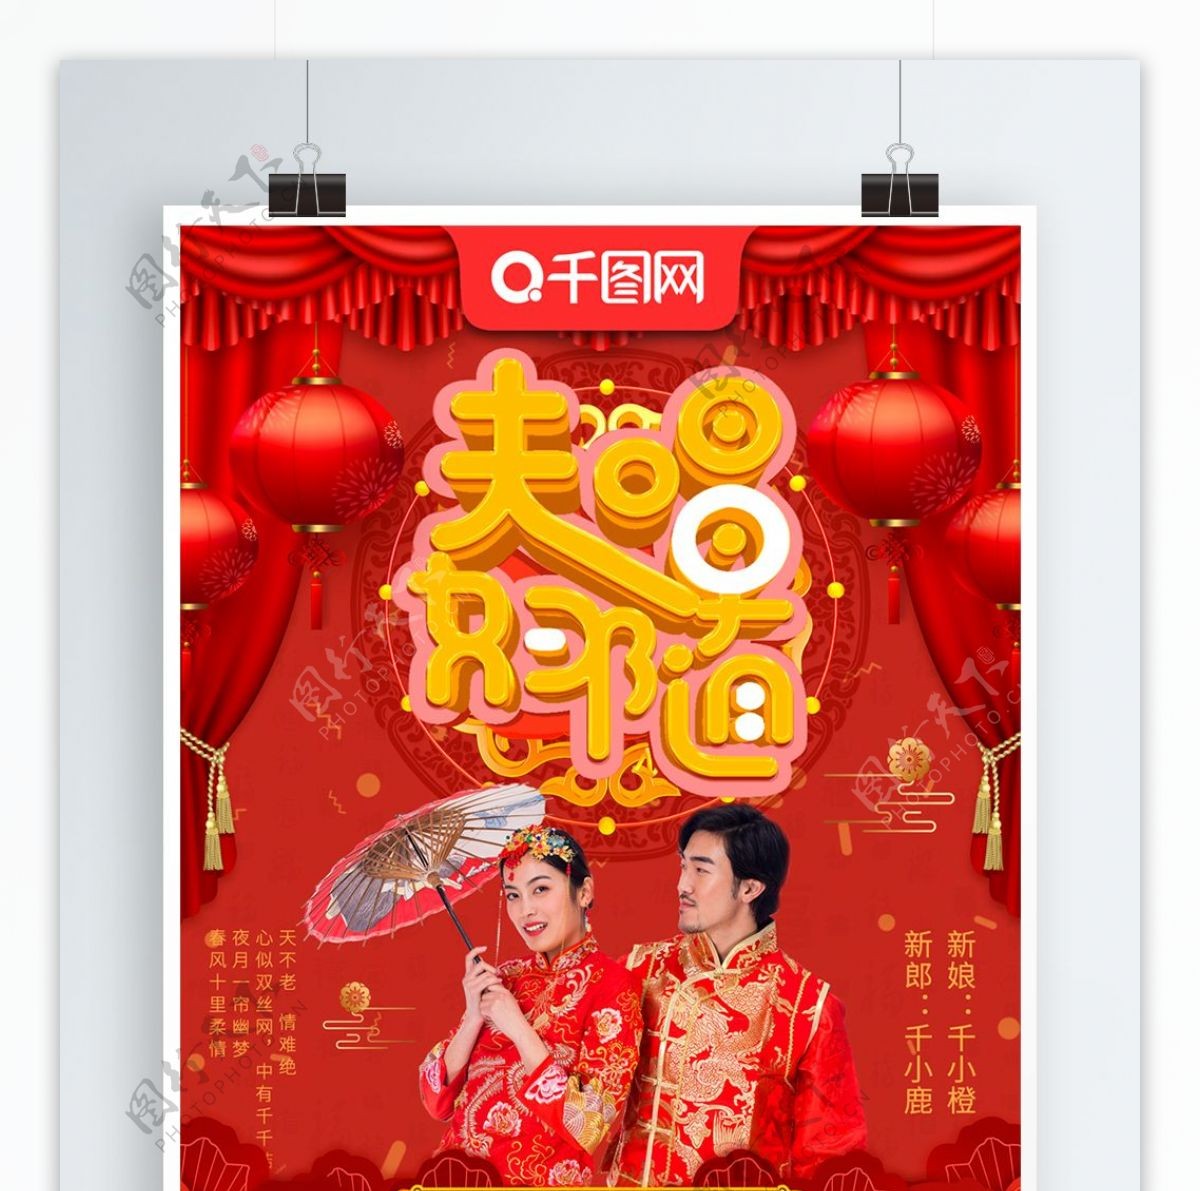 可商用红色中式喜庆夫唱妇随婚礼宣传海报